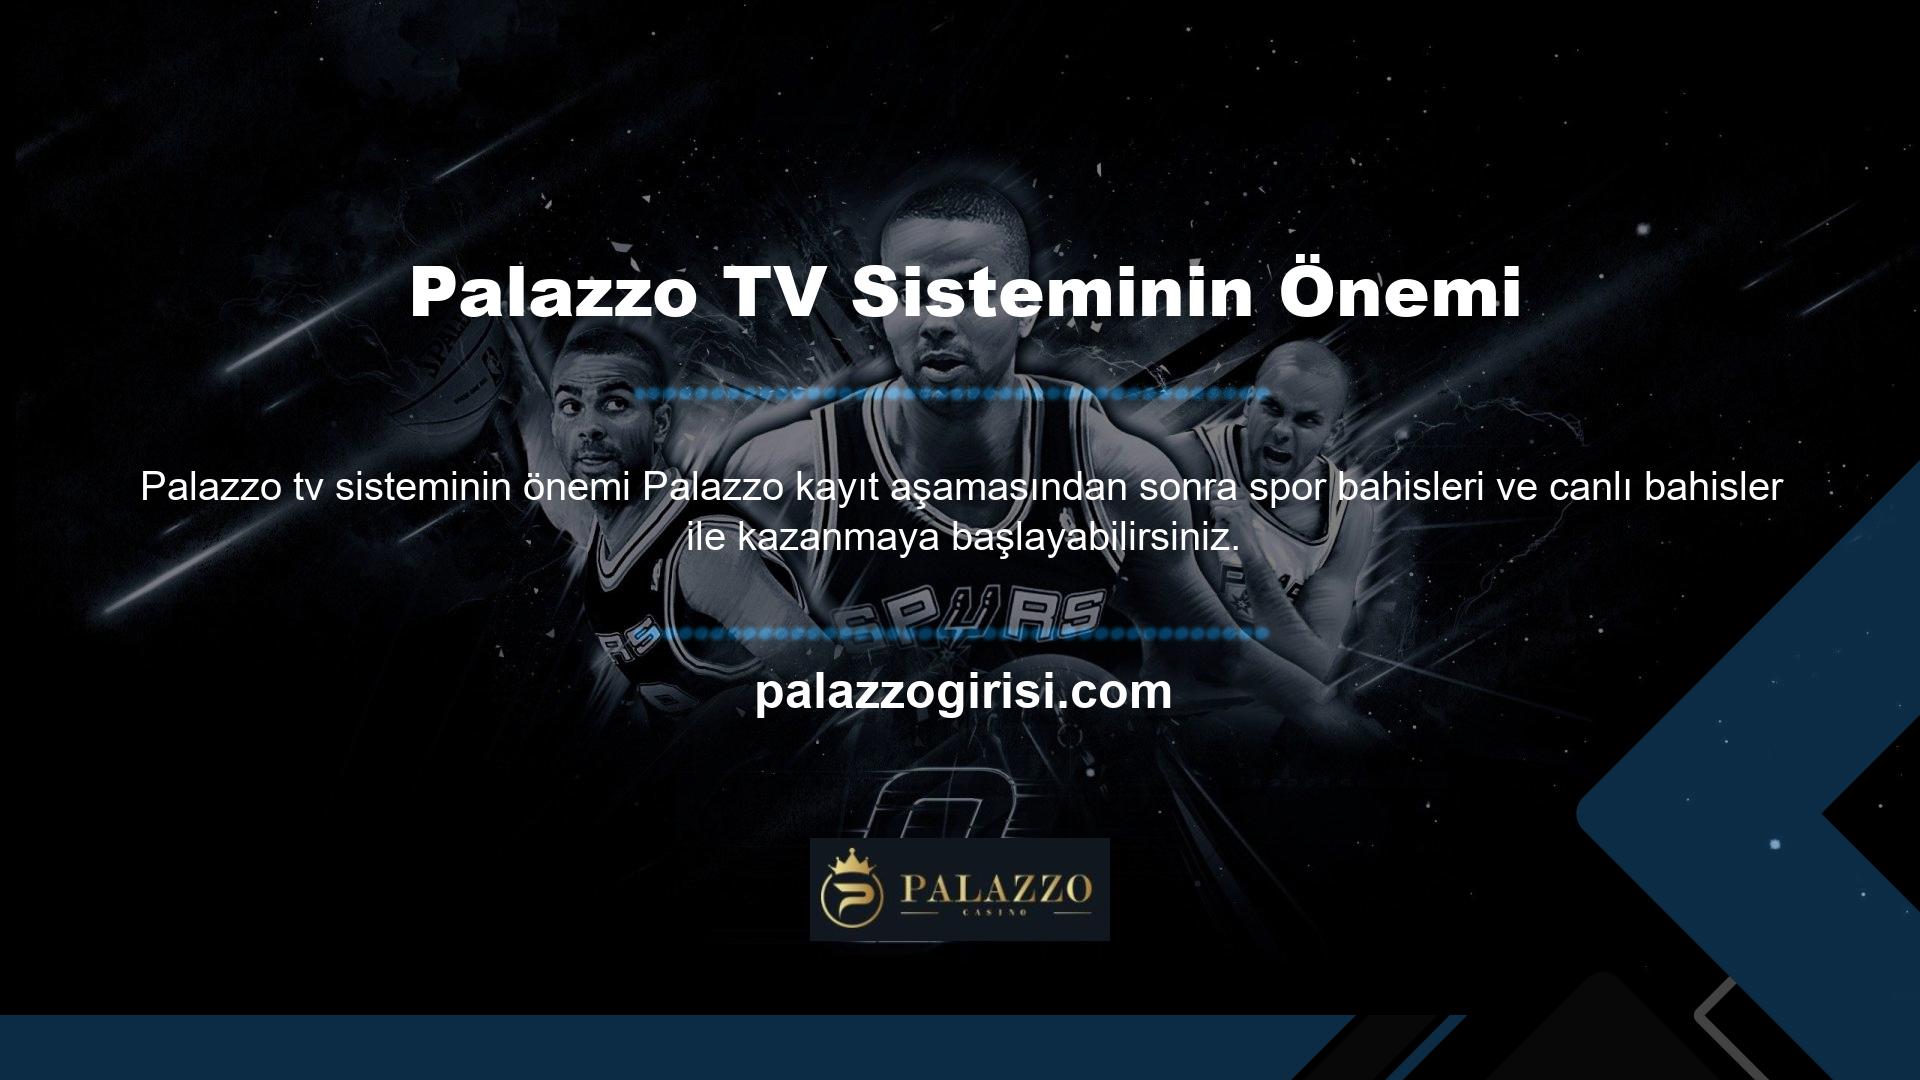 Palazzo TV sistemi bu nedenle çok önemlidir